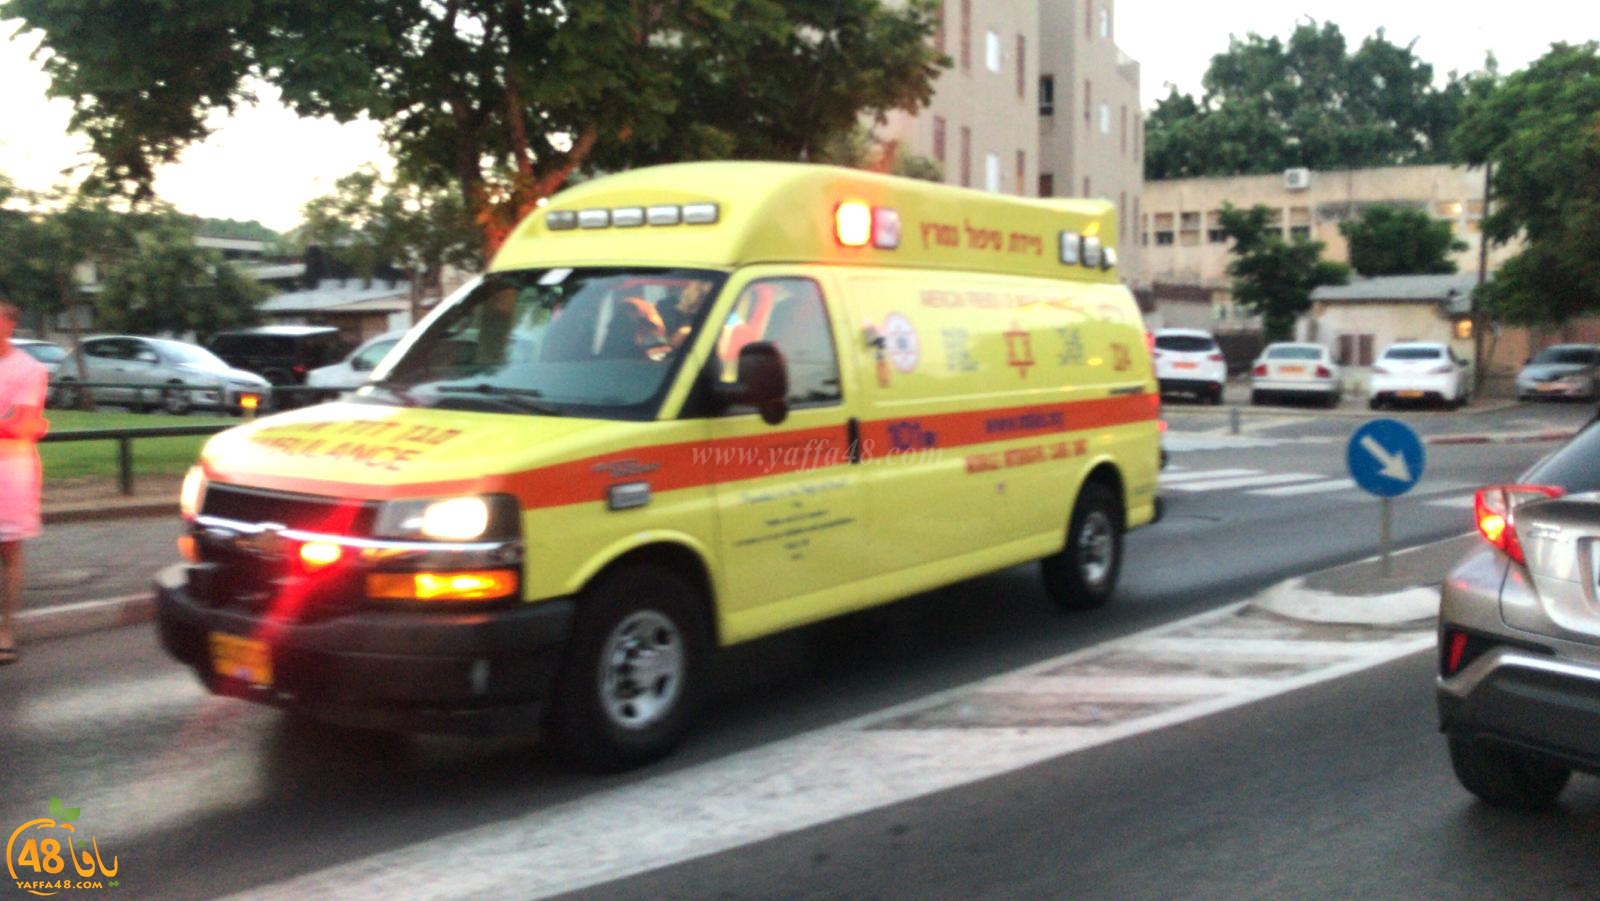  يافا: إصابة متوسطة لرجل بحادث دهس وسط المدينة